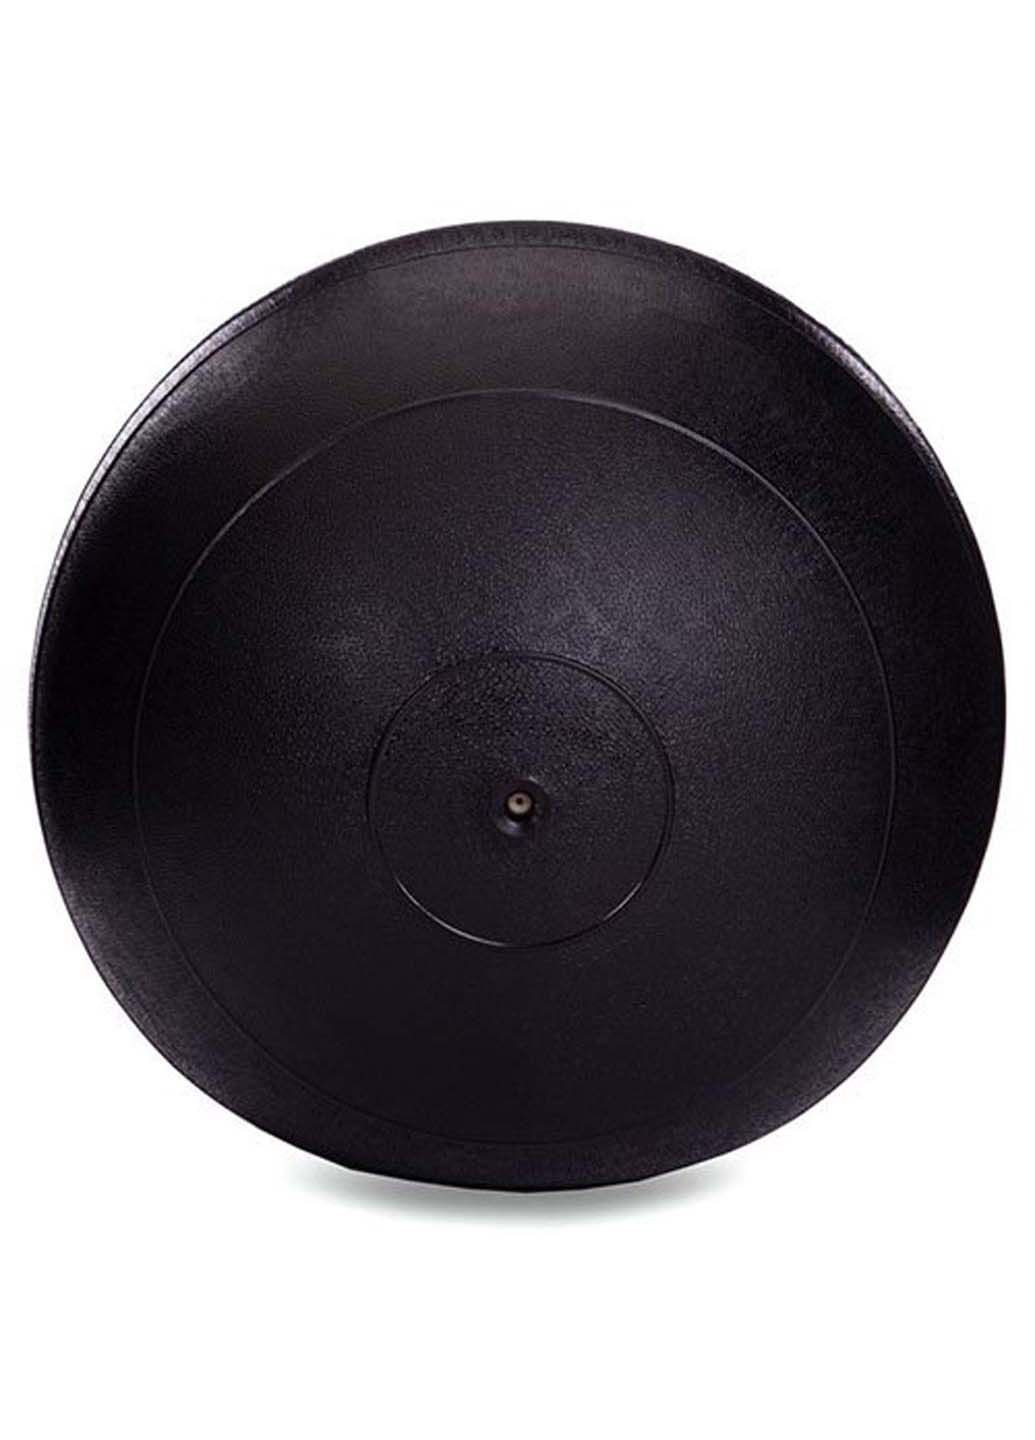 Мяч набивной слэмбол для кроссфита рифленый Modern FI-2672 12 кг Zelart (290109235)